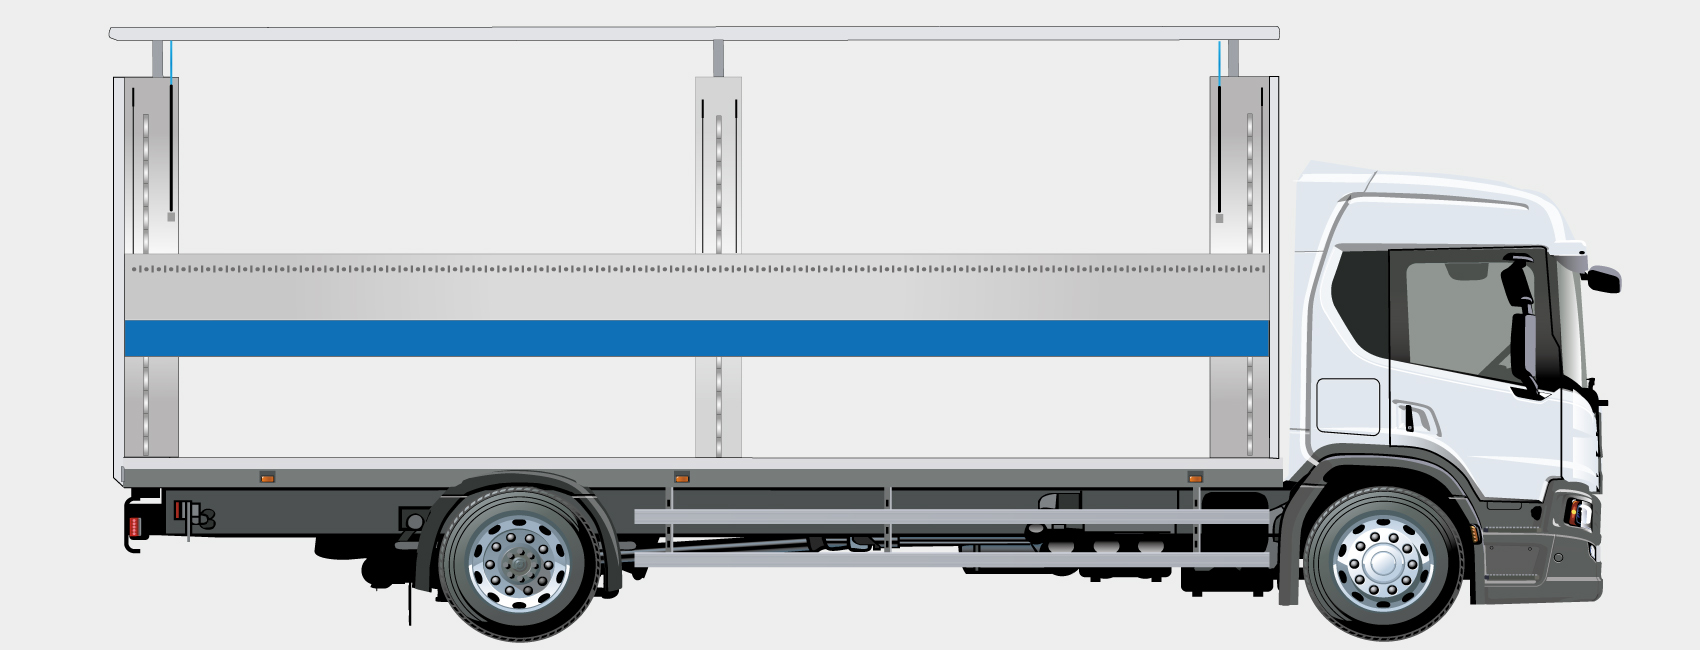 Carrossier double étages optimisant l'espace de chargement sur châssis de camion